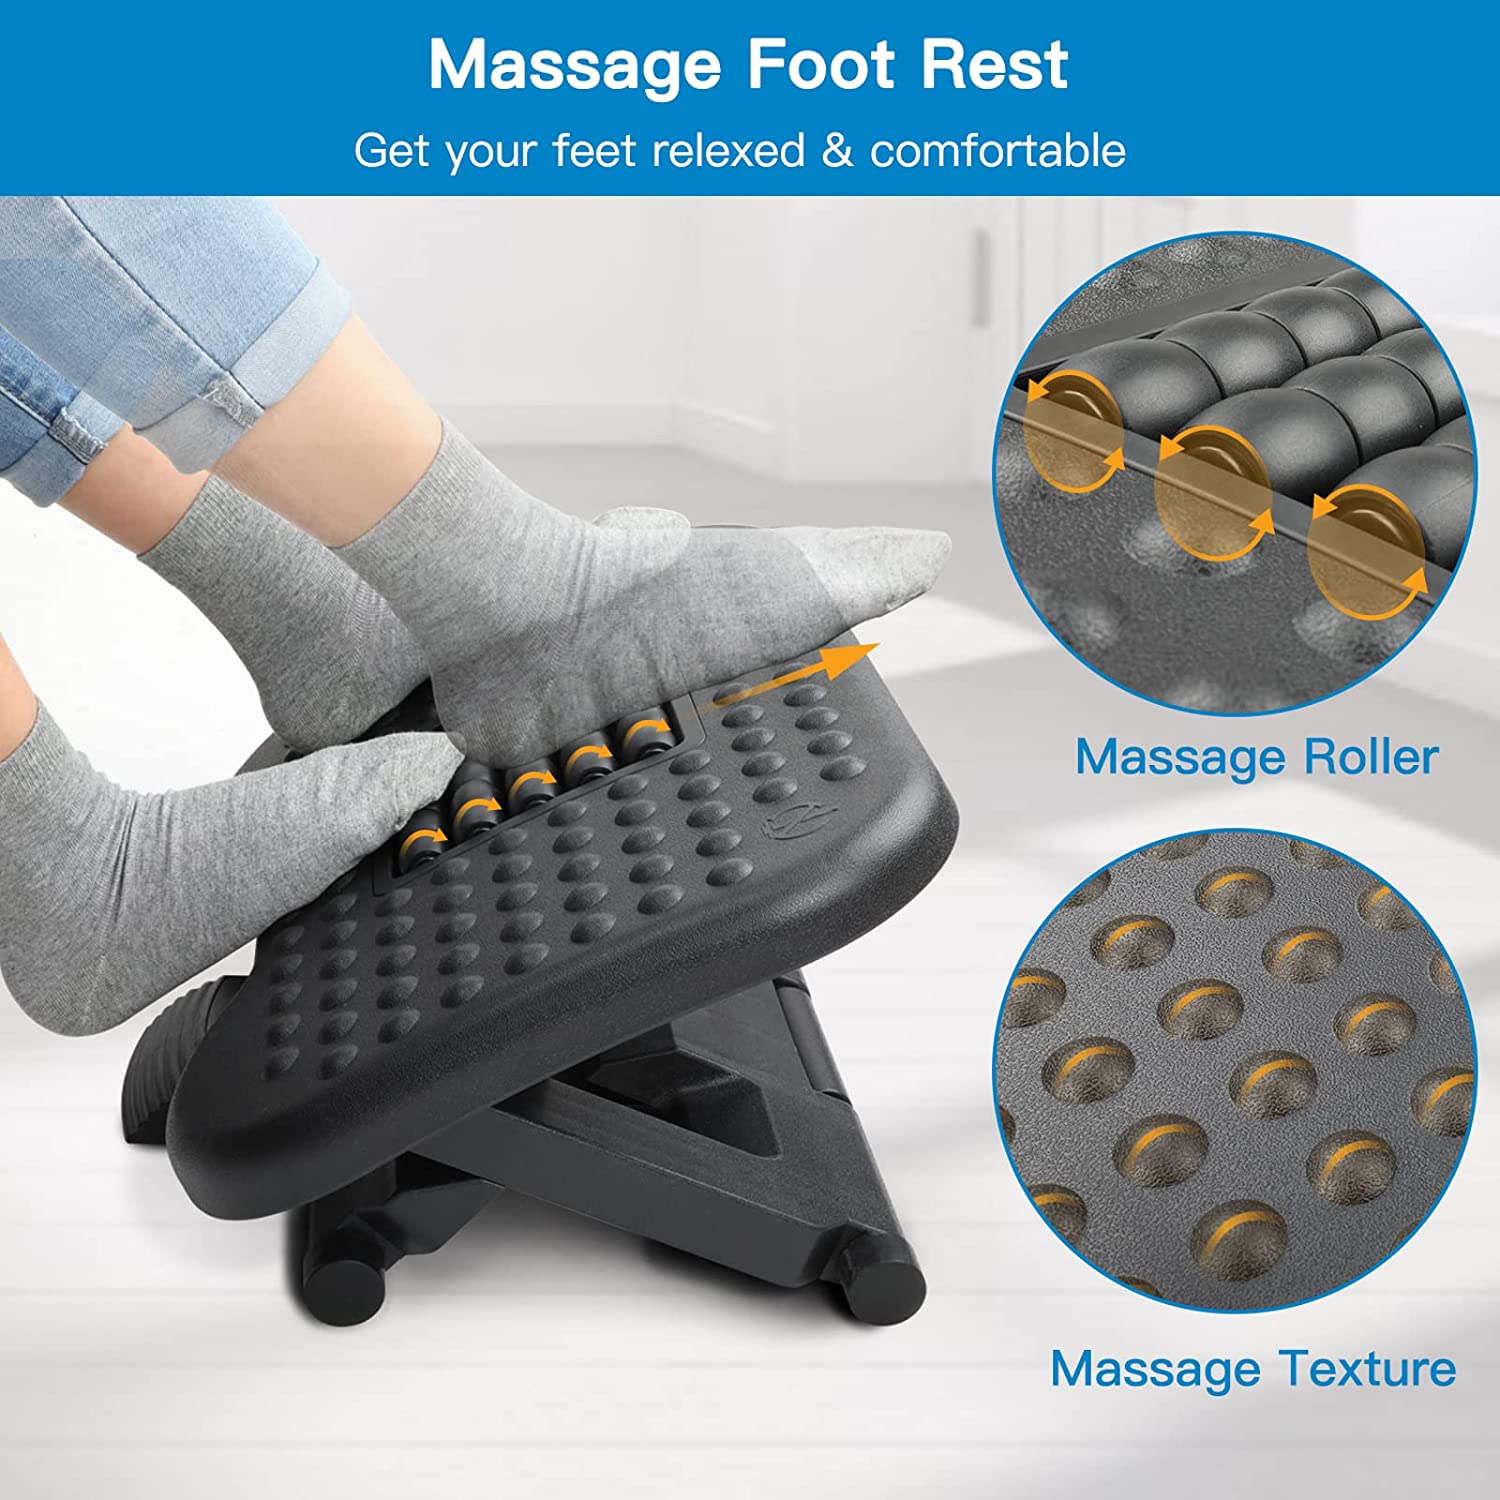 HUANUO Adjustable Under Desk Footrest, Foot Rest for Under Desk at Work  with Massage, Foot Stool Under Desk with 3 Height Position & 30 Degree Tilt